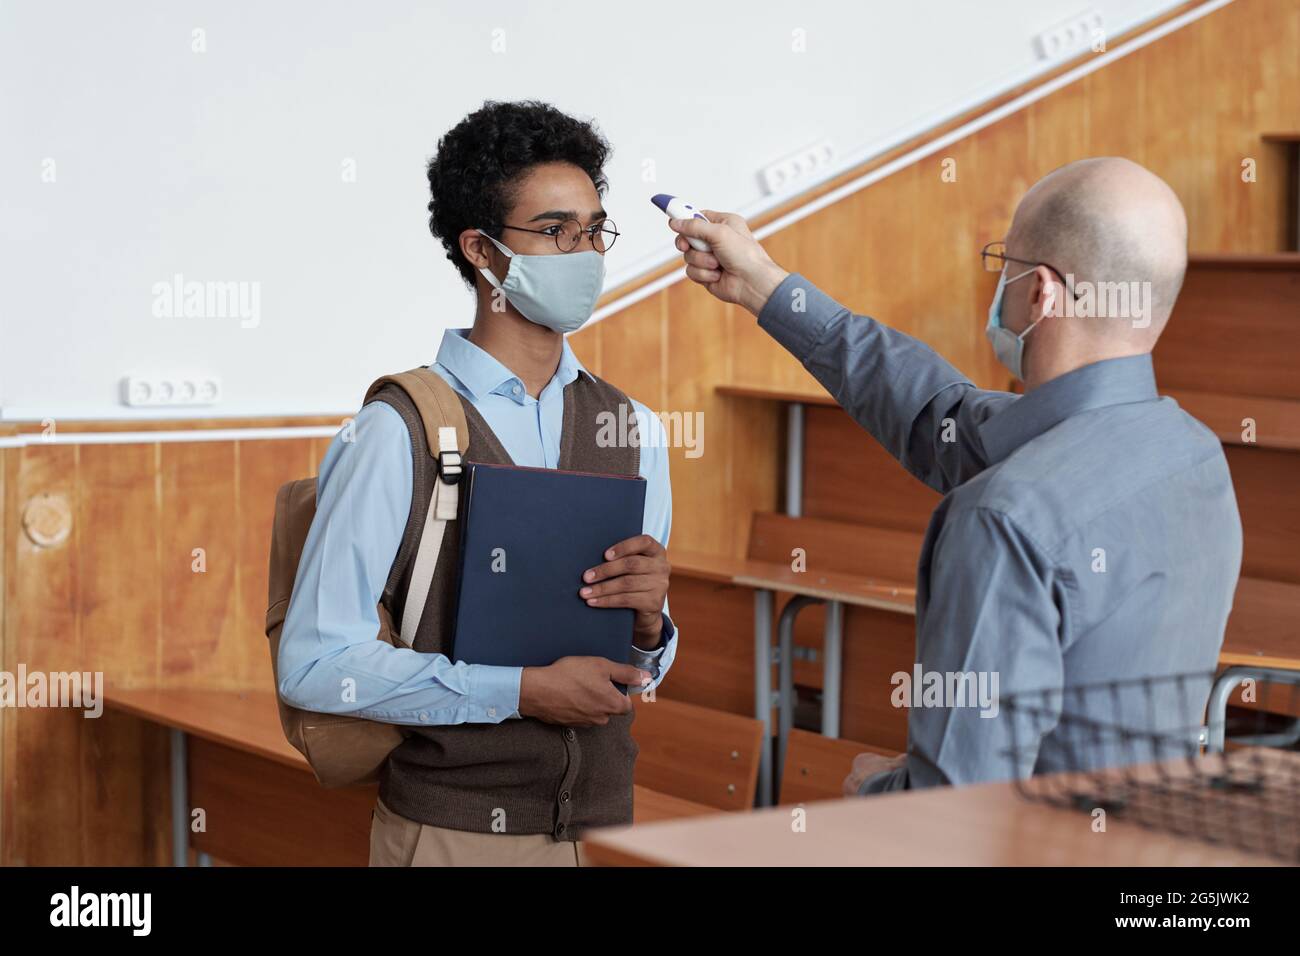 Lehrer, der die Körpertemperatur des Schülers in einer Maske im Klassenzimmer misst Stockfoto